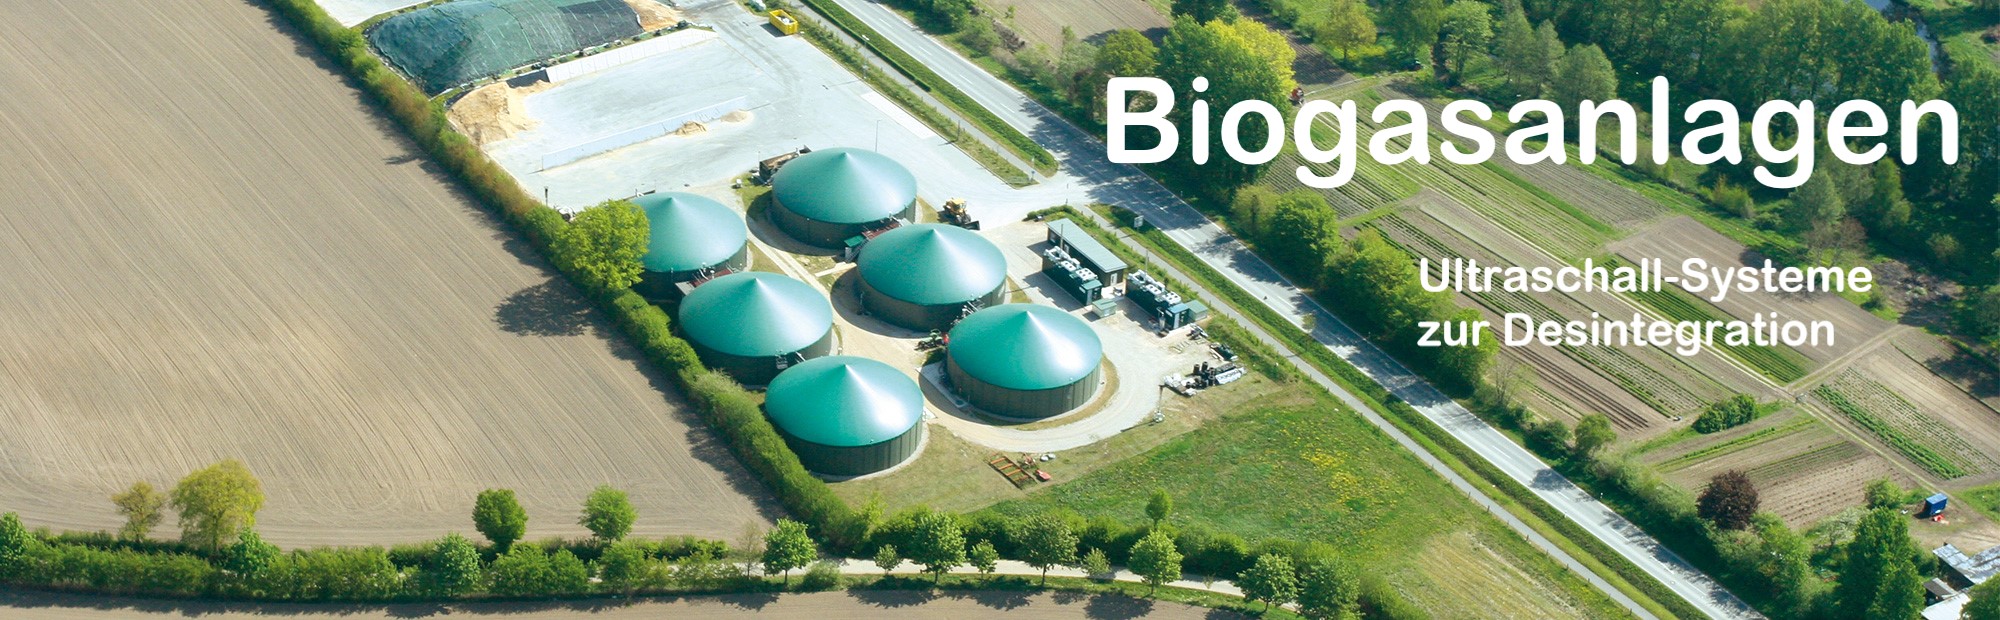 Biogasanlagen slider mit Text.jpg